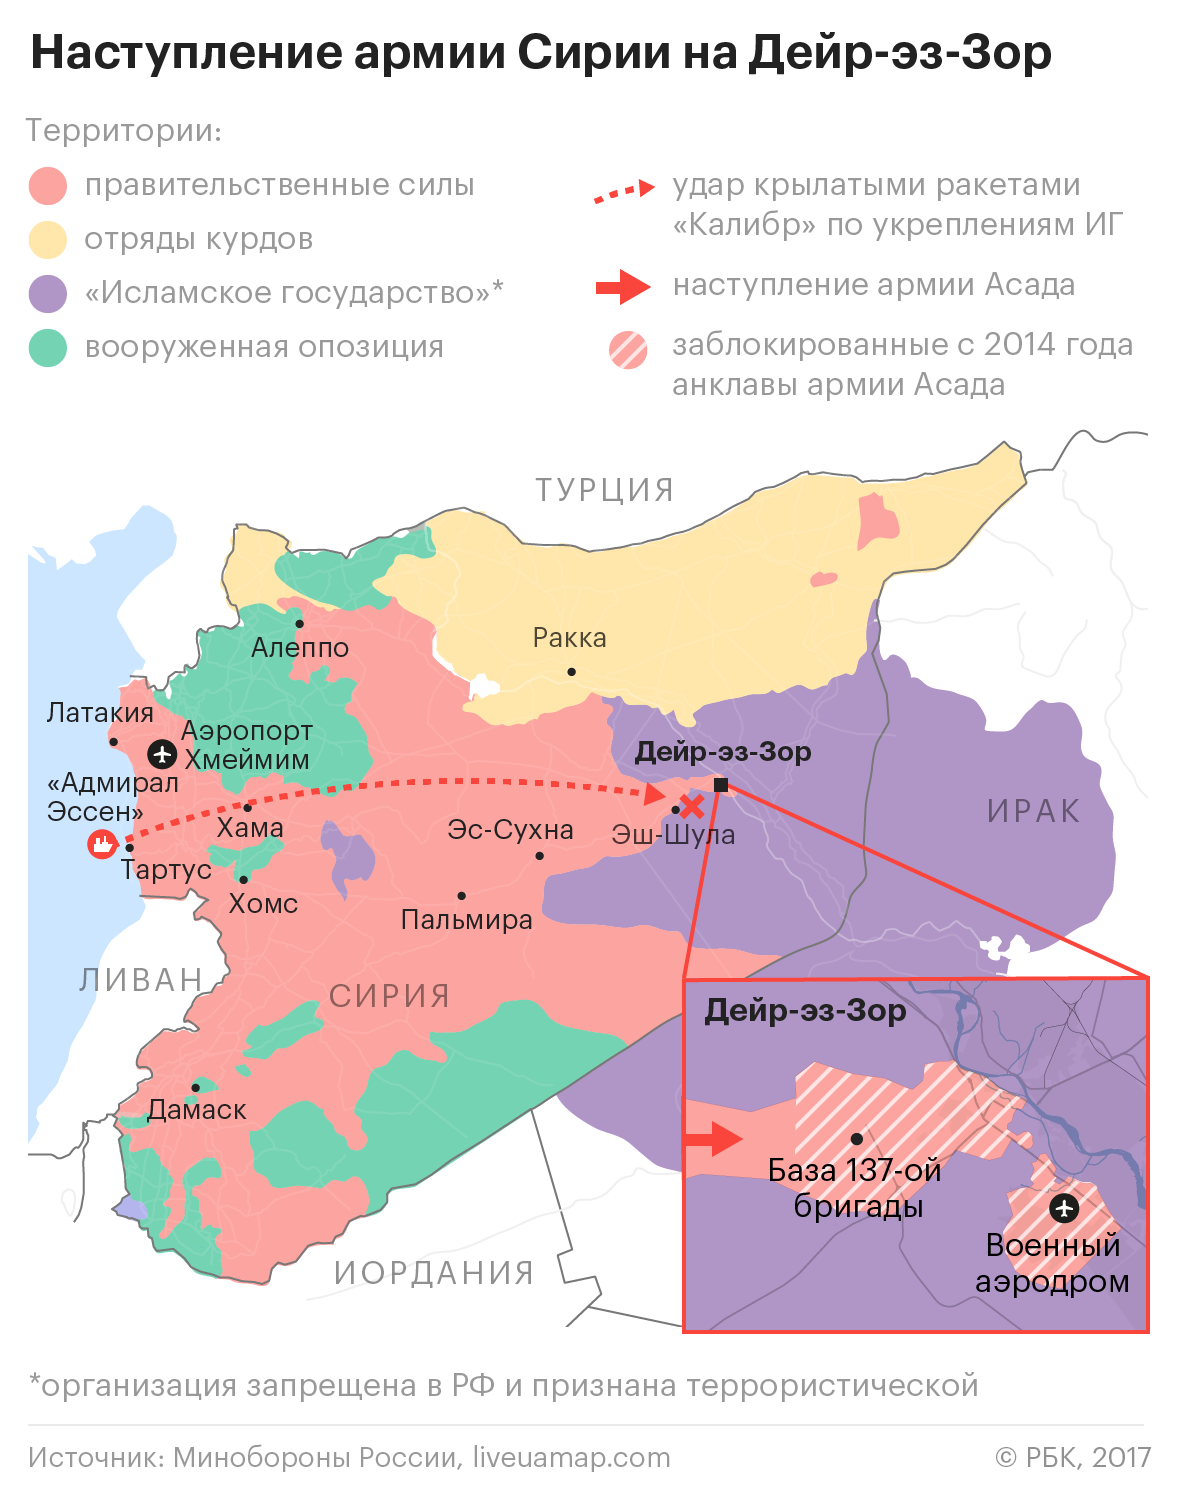 Стратегическая победа: как сирийские силы сняли блокаду с Дейр-эз-Зора